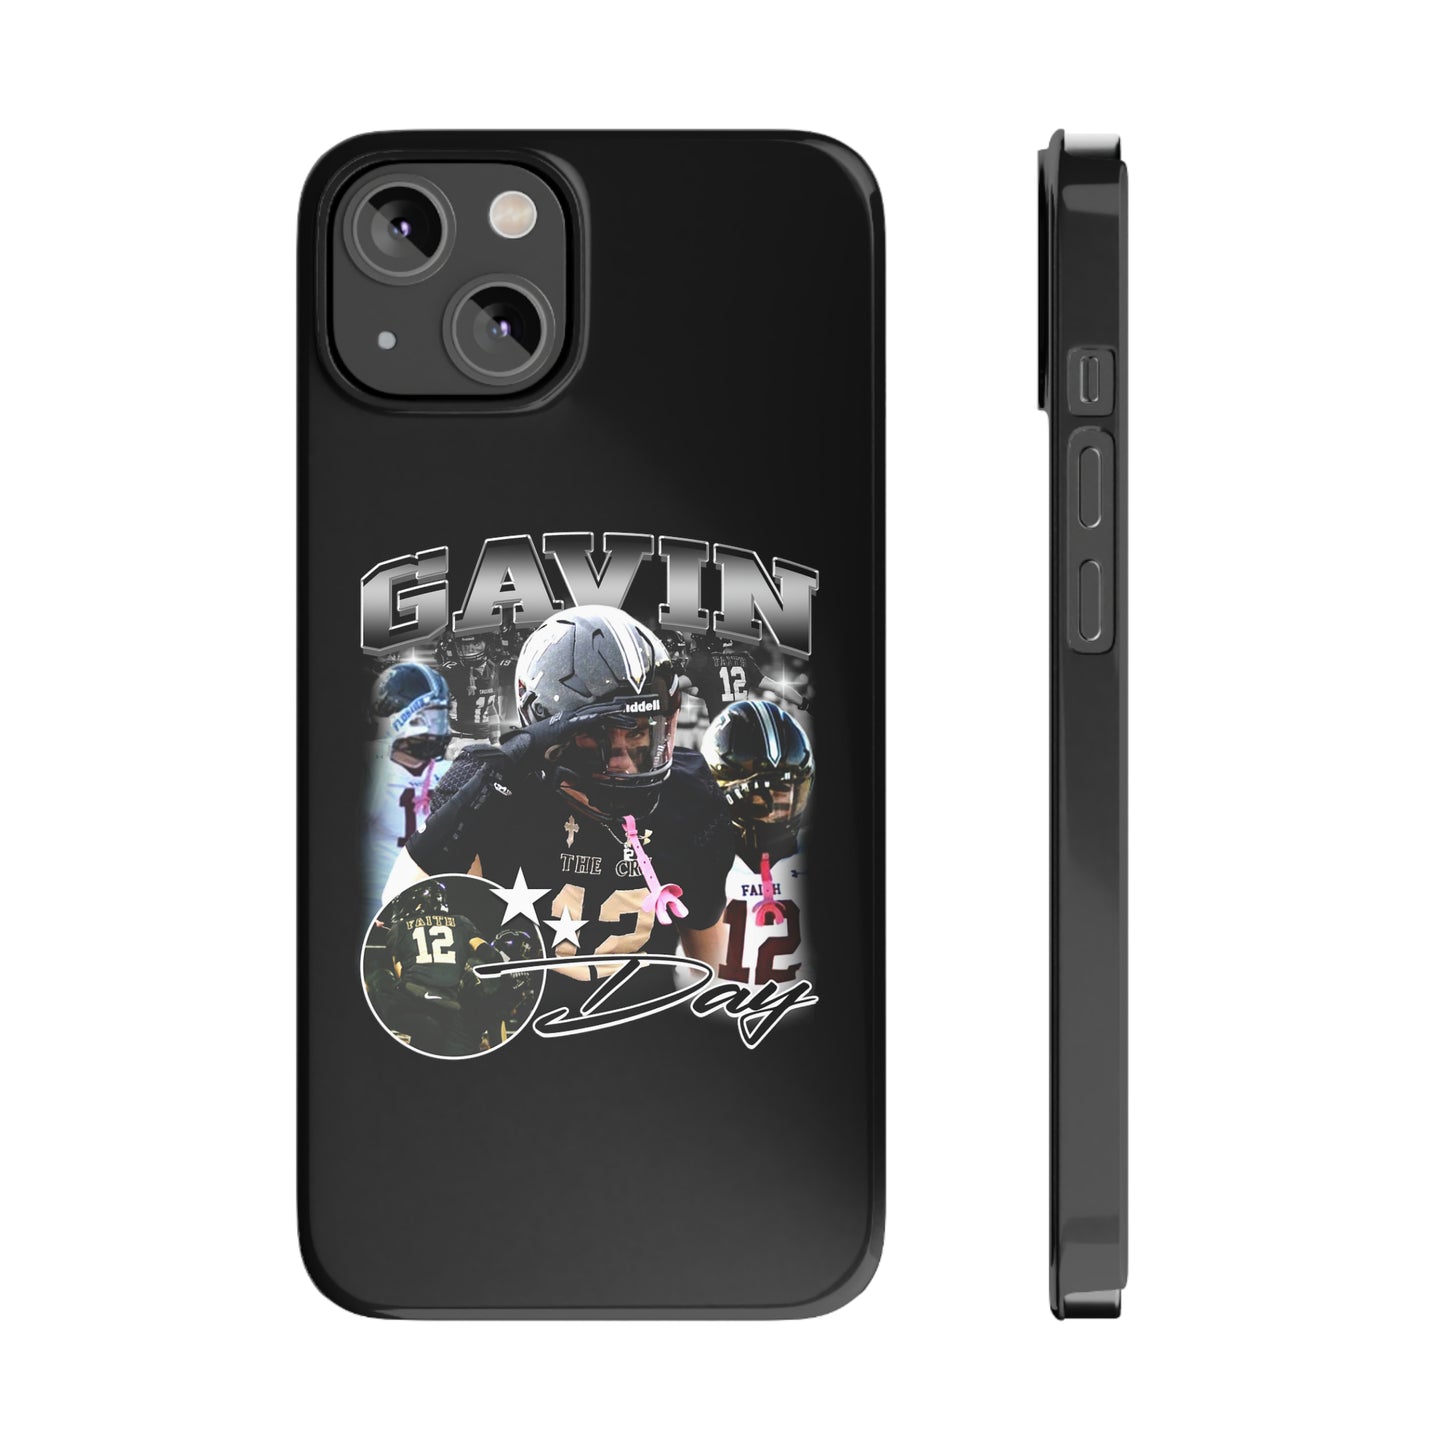 Gavin Day Slim Phone Cases